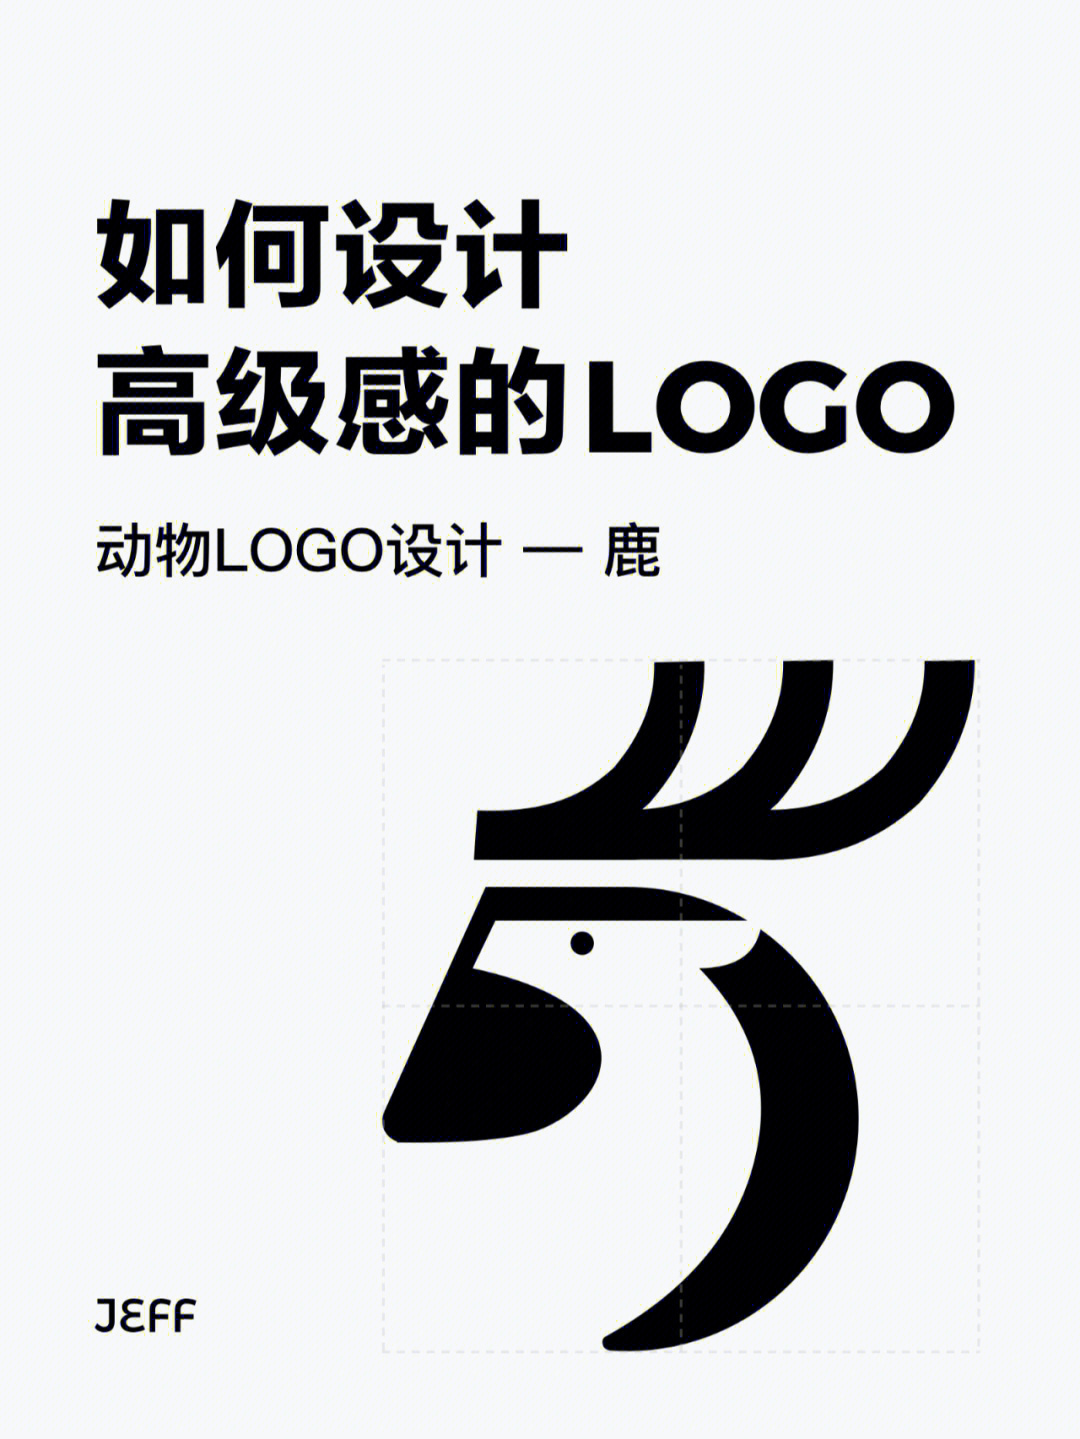 卡通动物logo设计说明图片